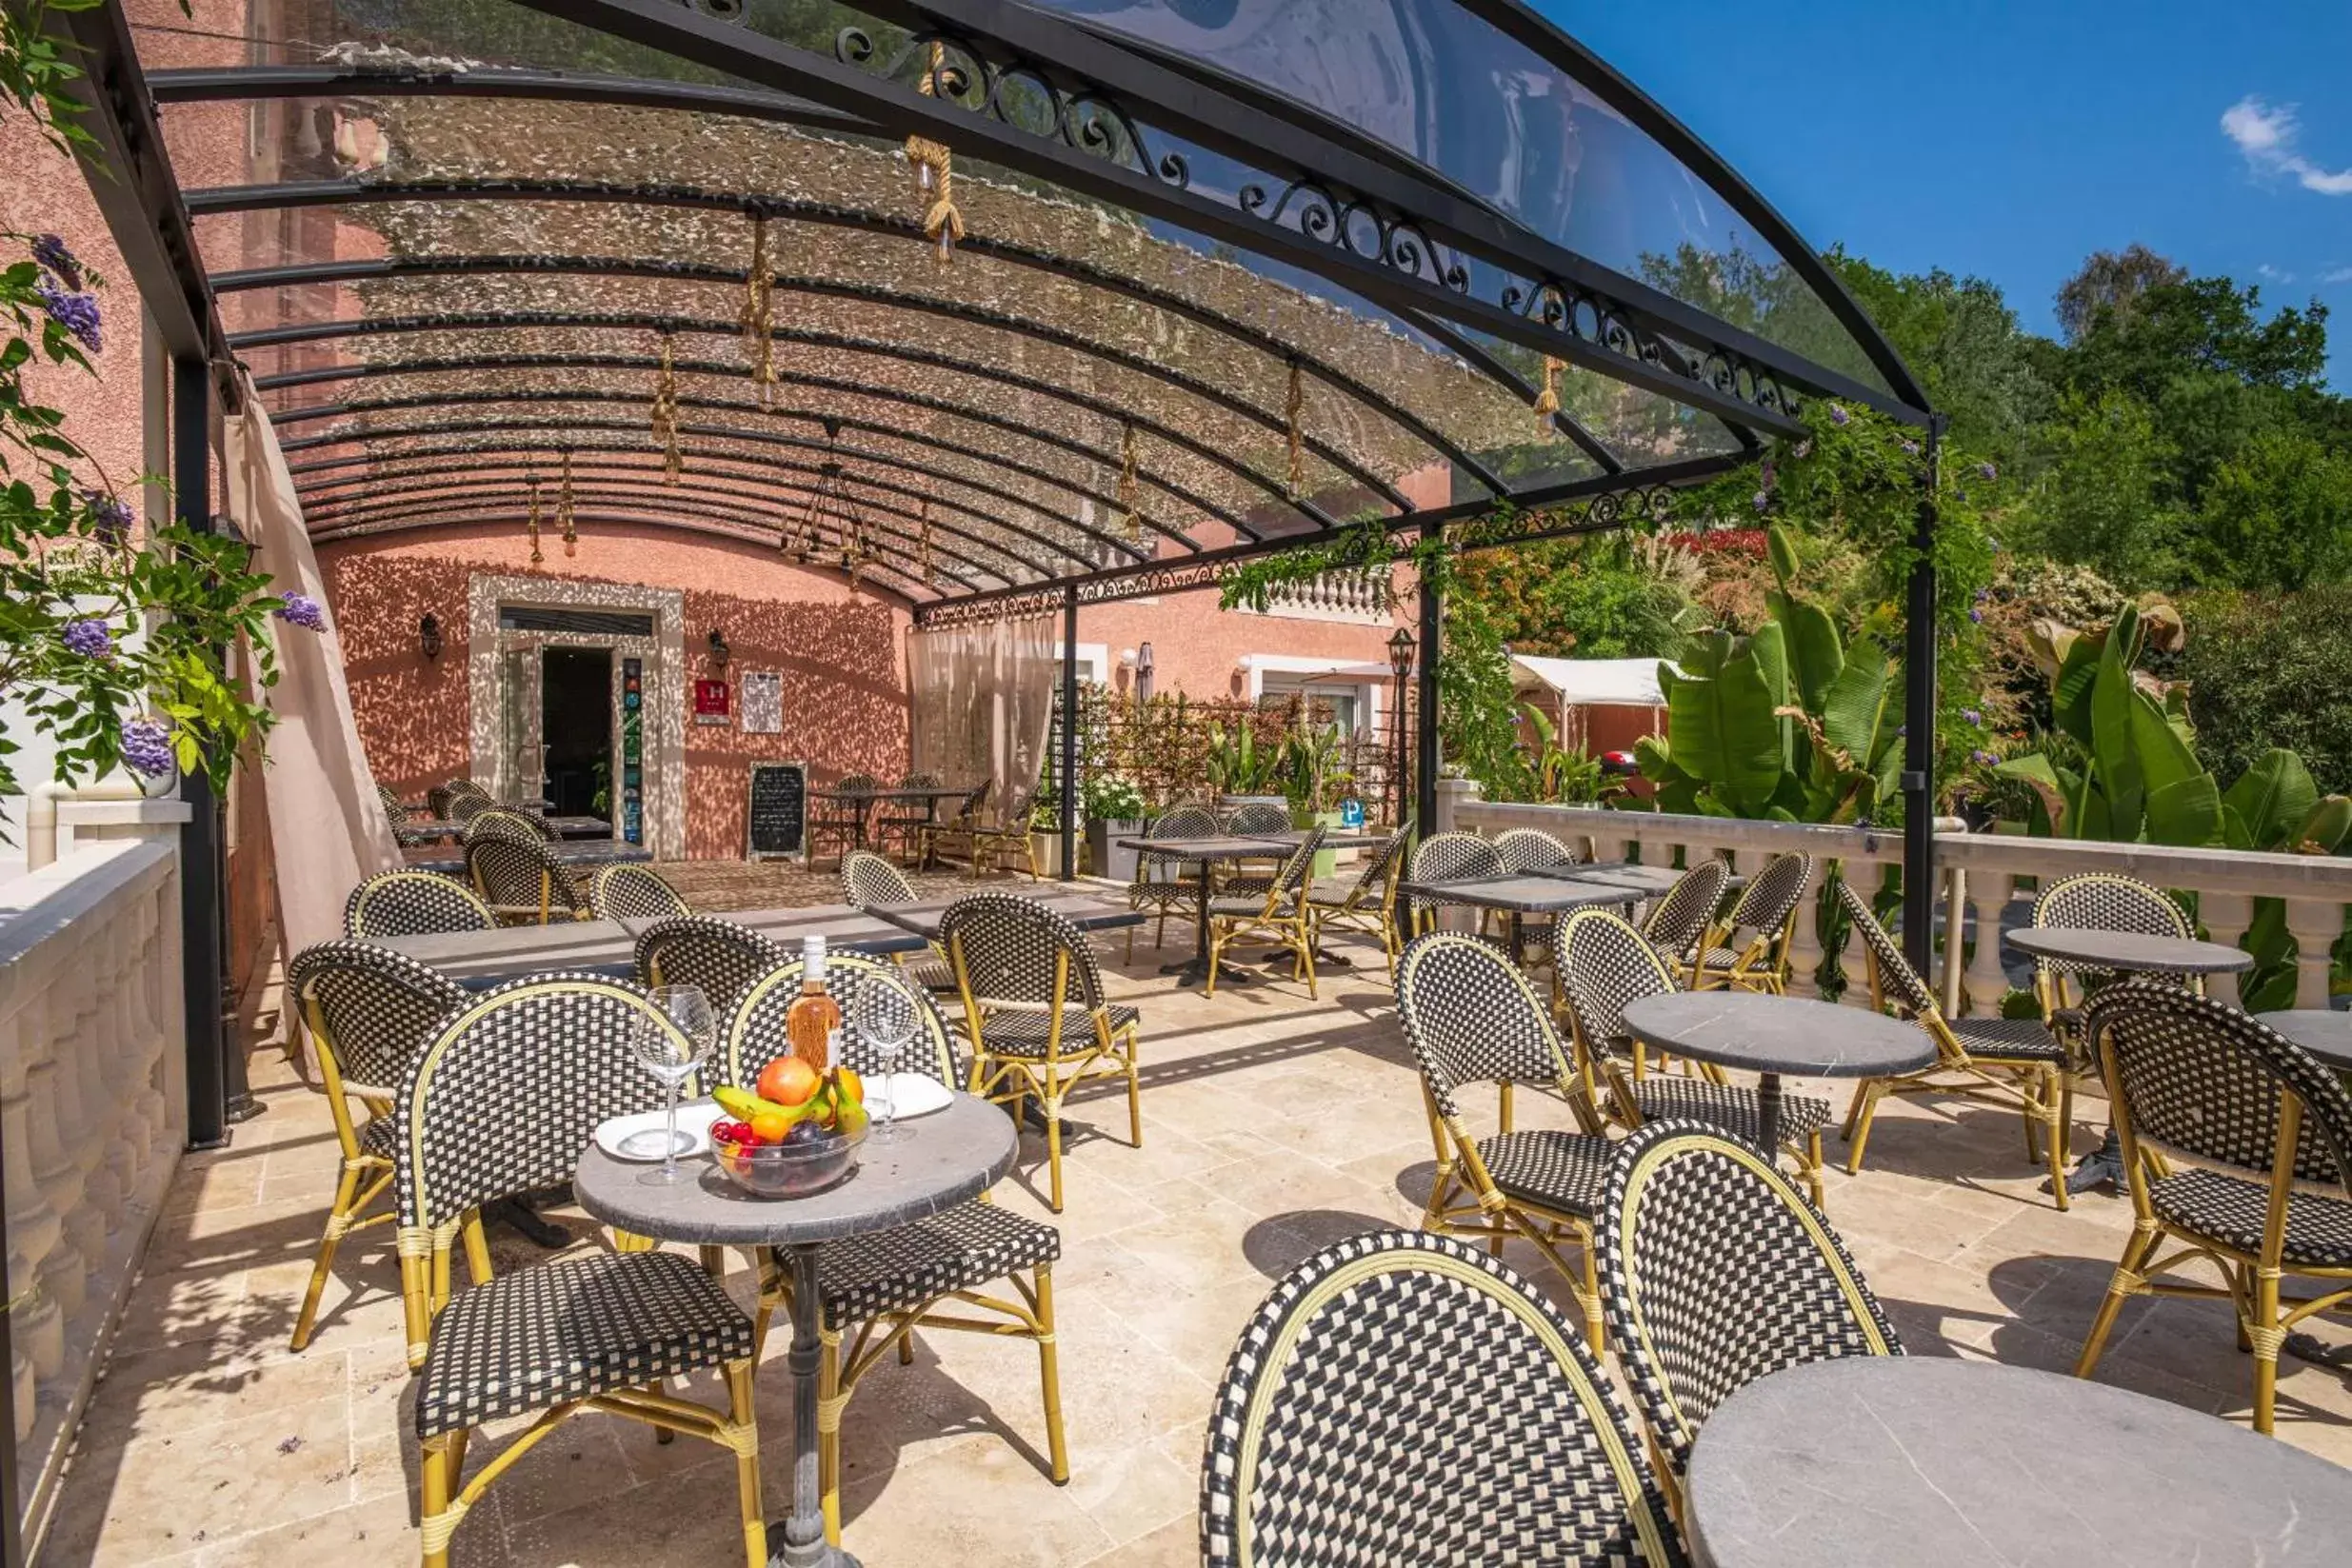 Property building, Restaurant/Places to Eat in Les Bastides Saint Paul